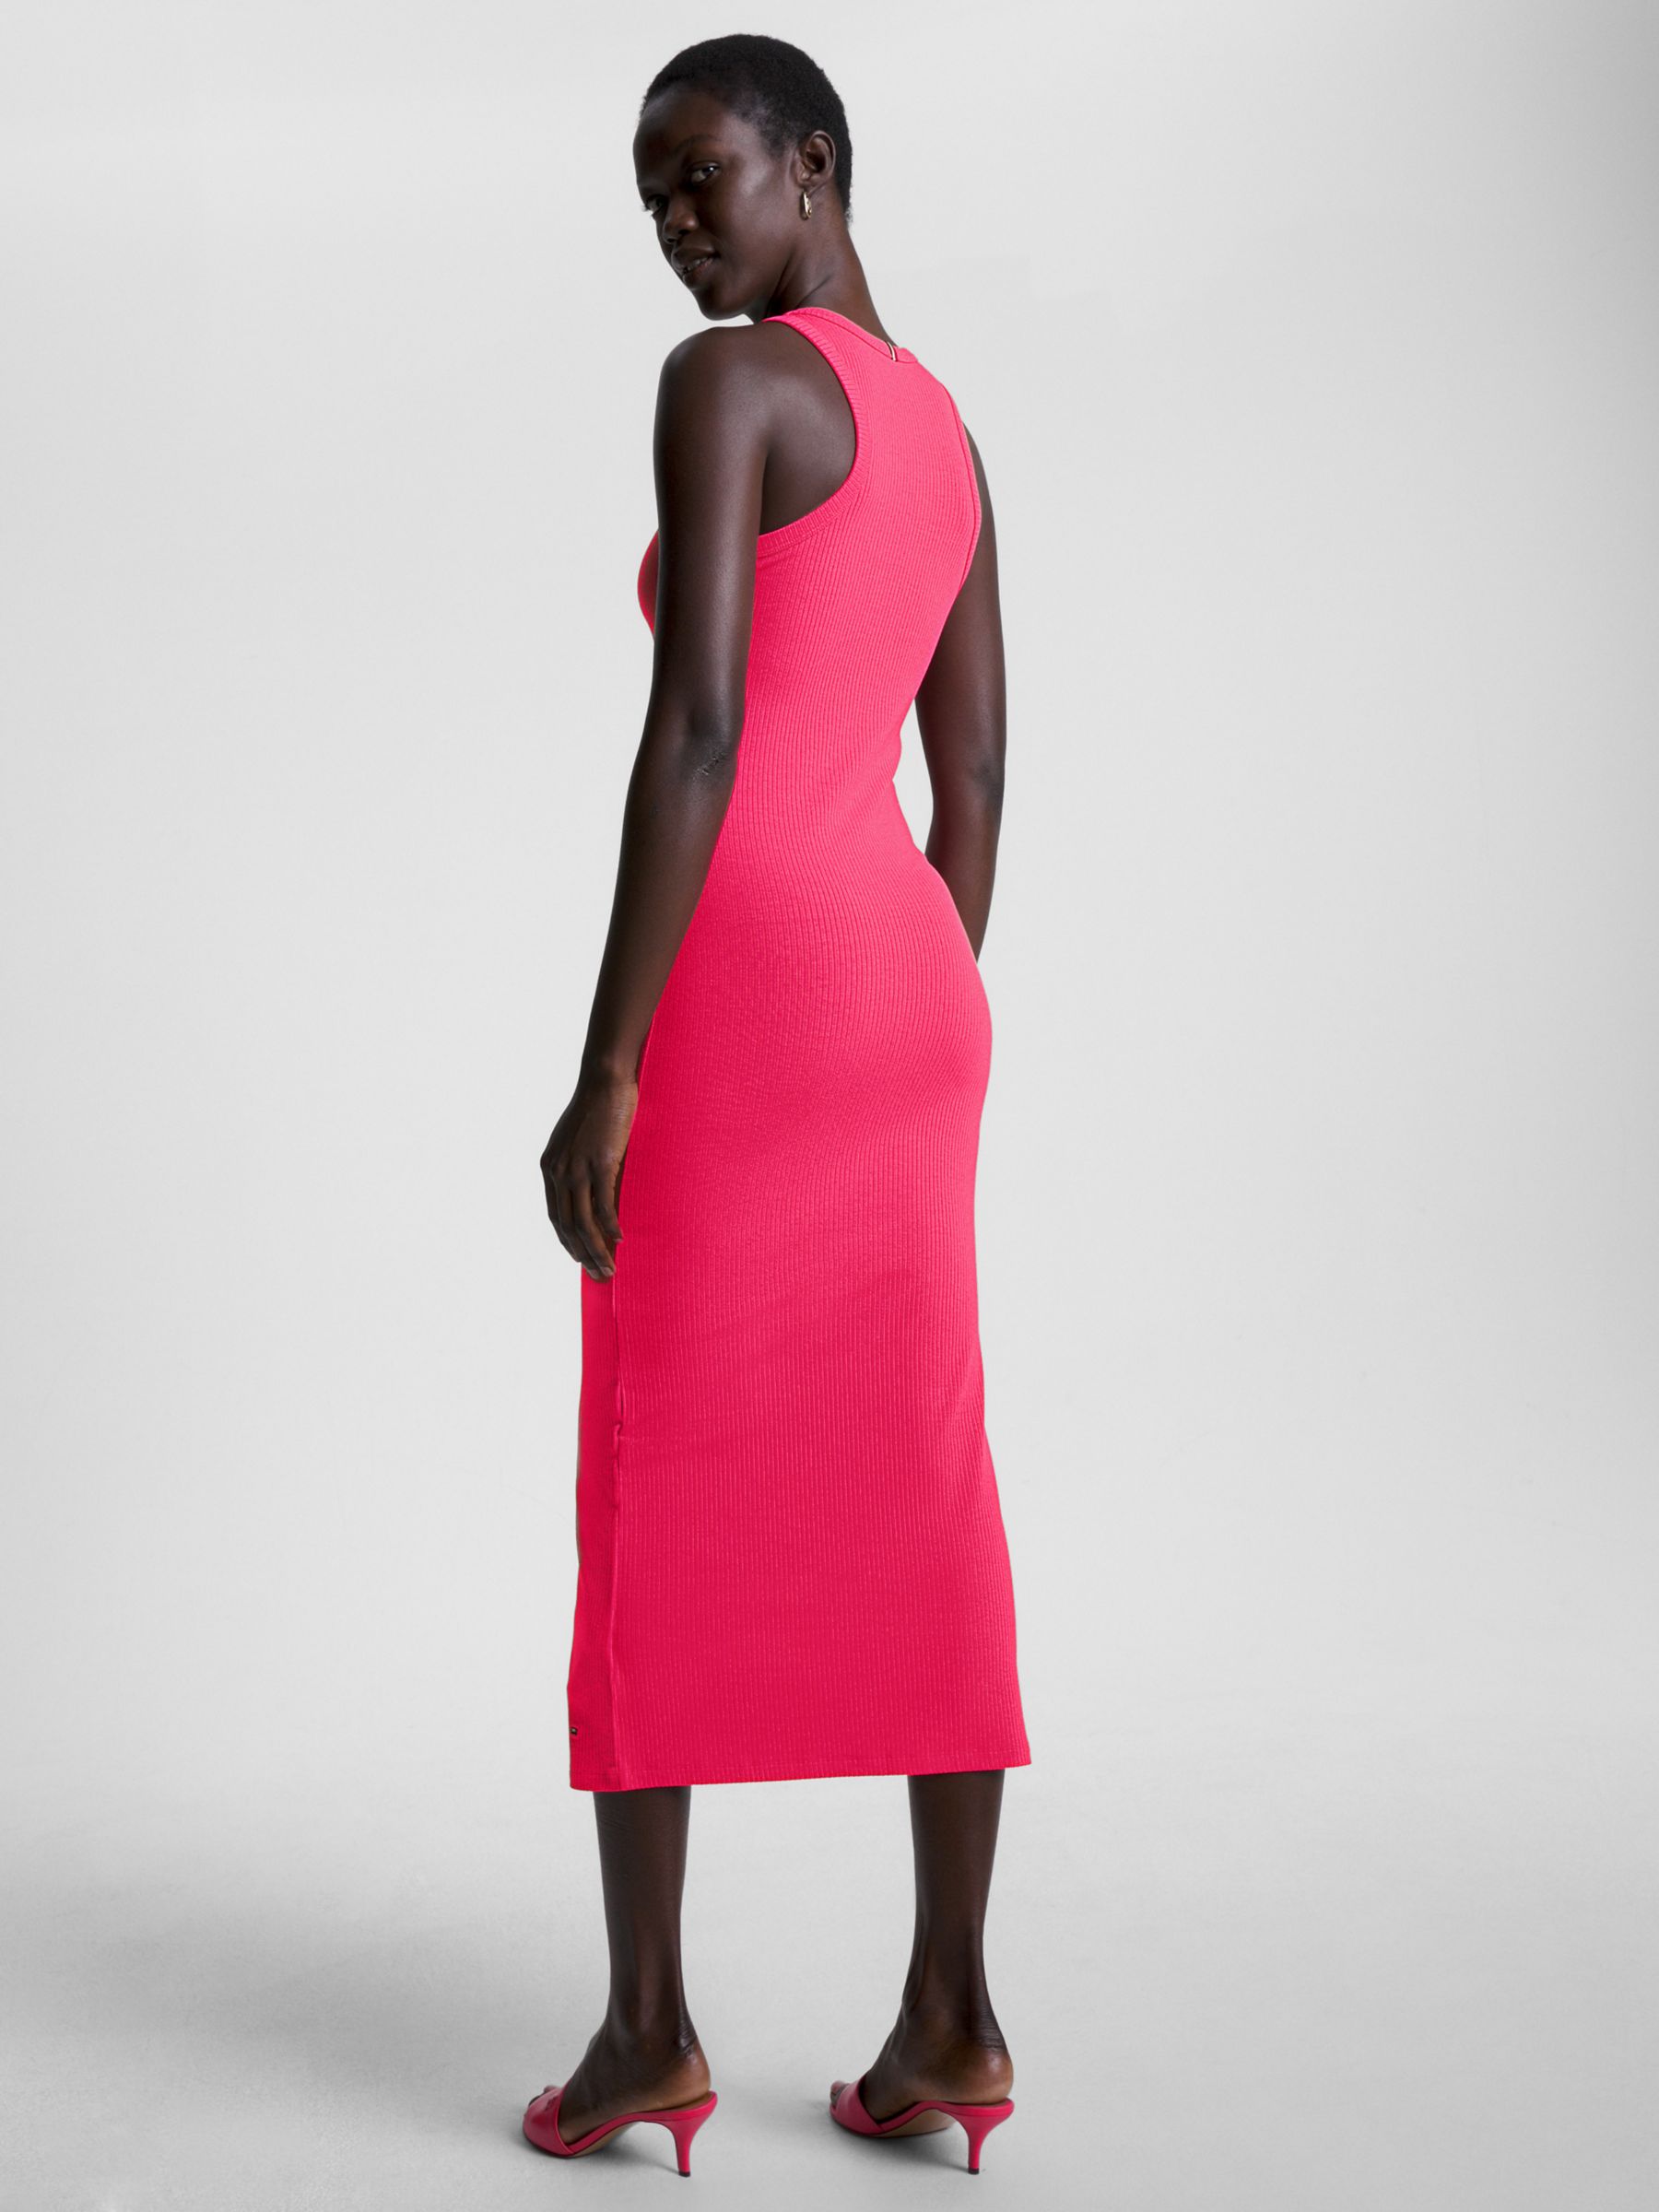 Tommy Hilfiger Slim John & Lewis Pink Dress, Midi Rib Bright Partners at Cerise